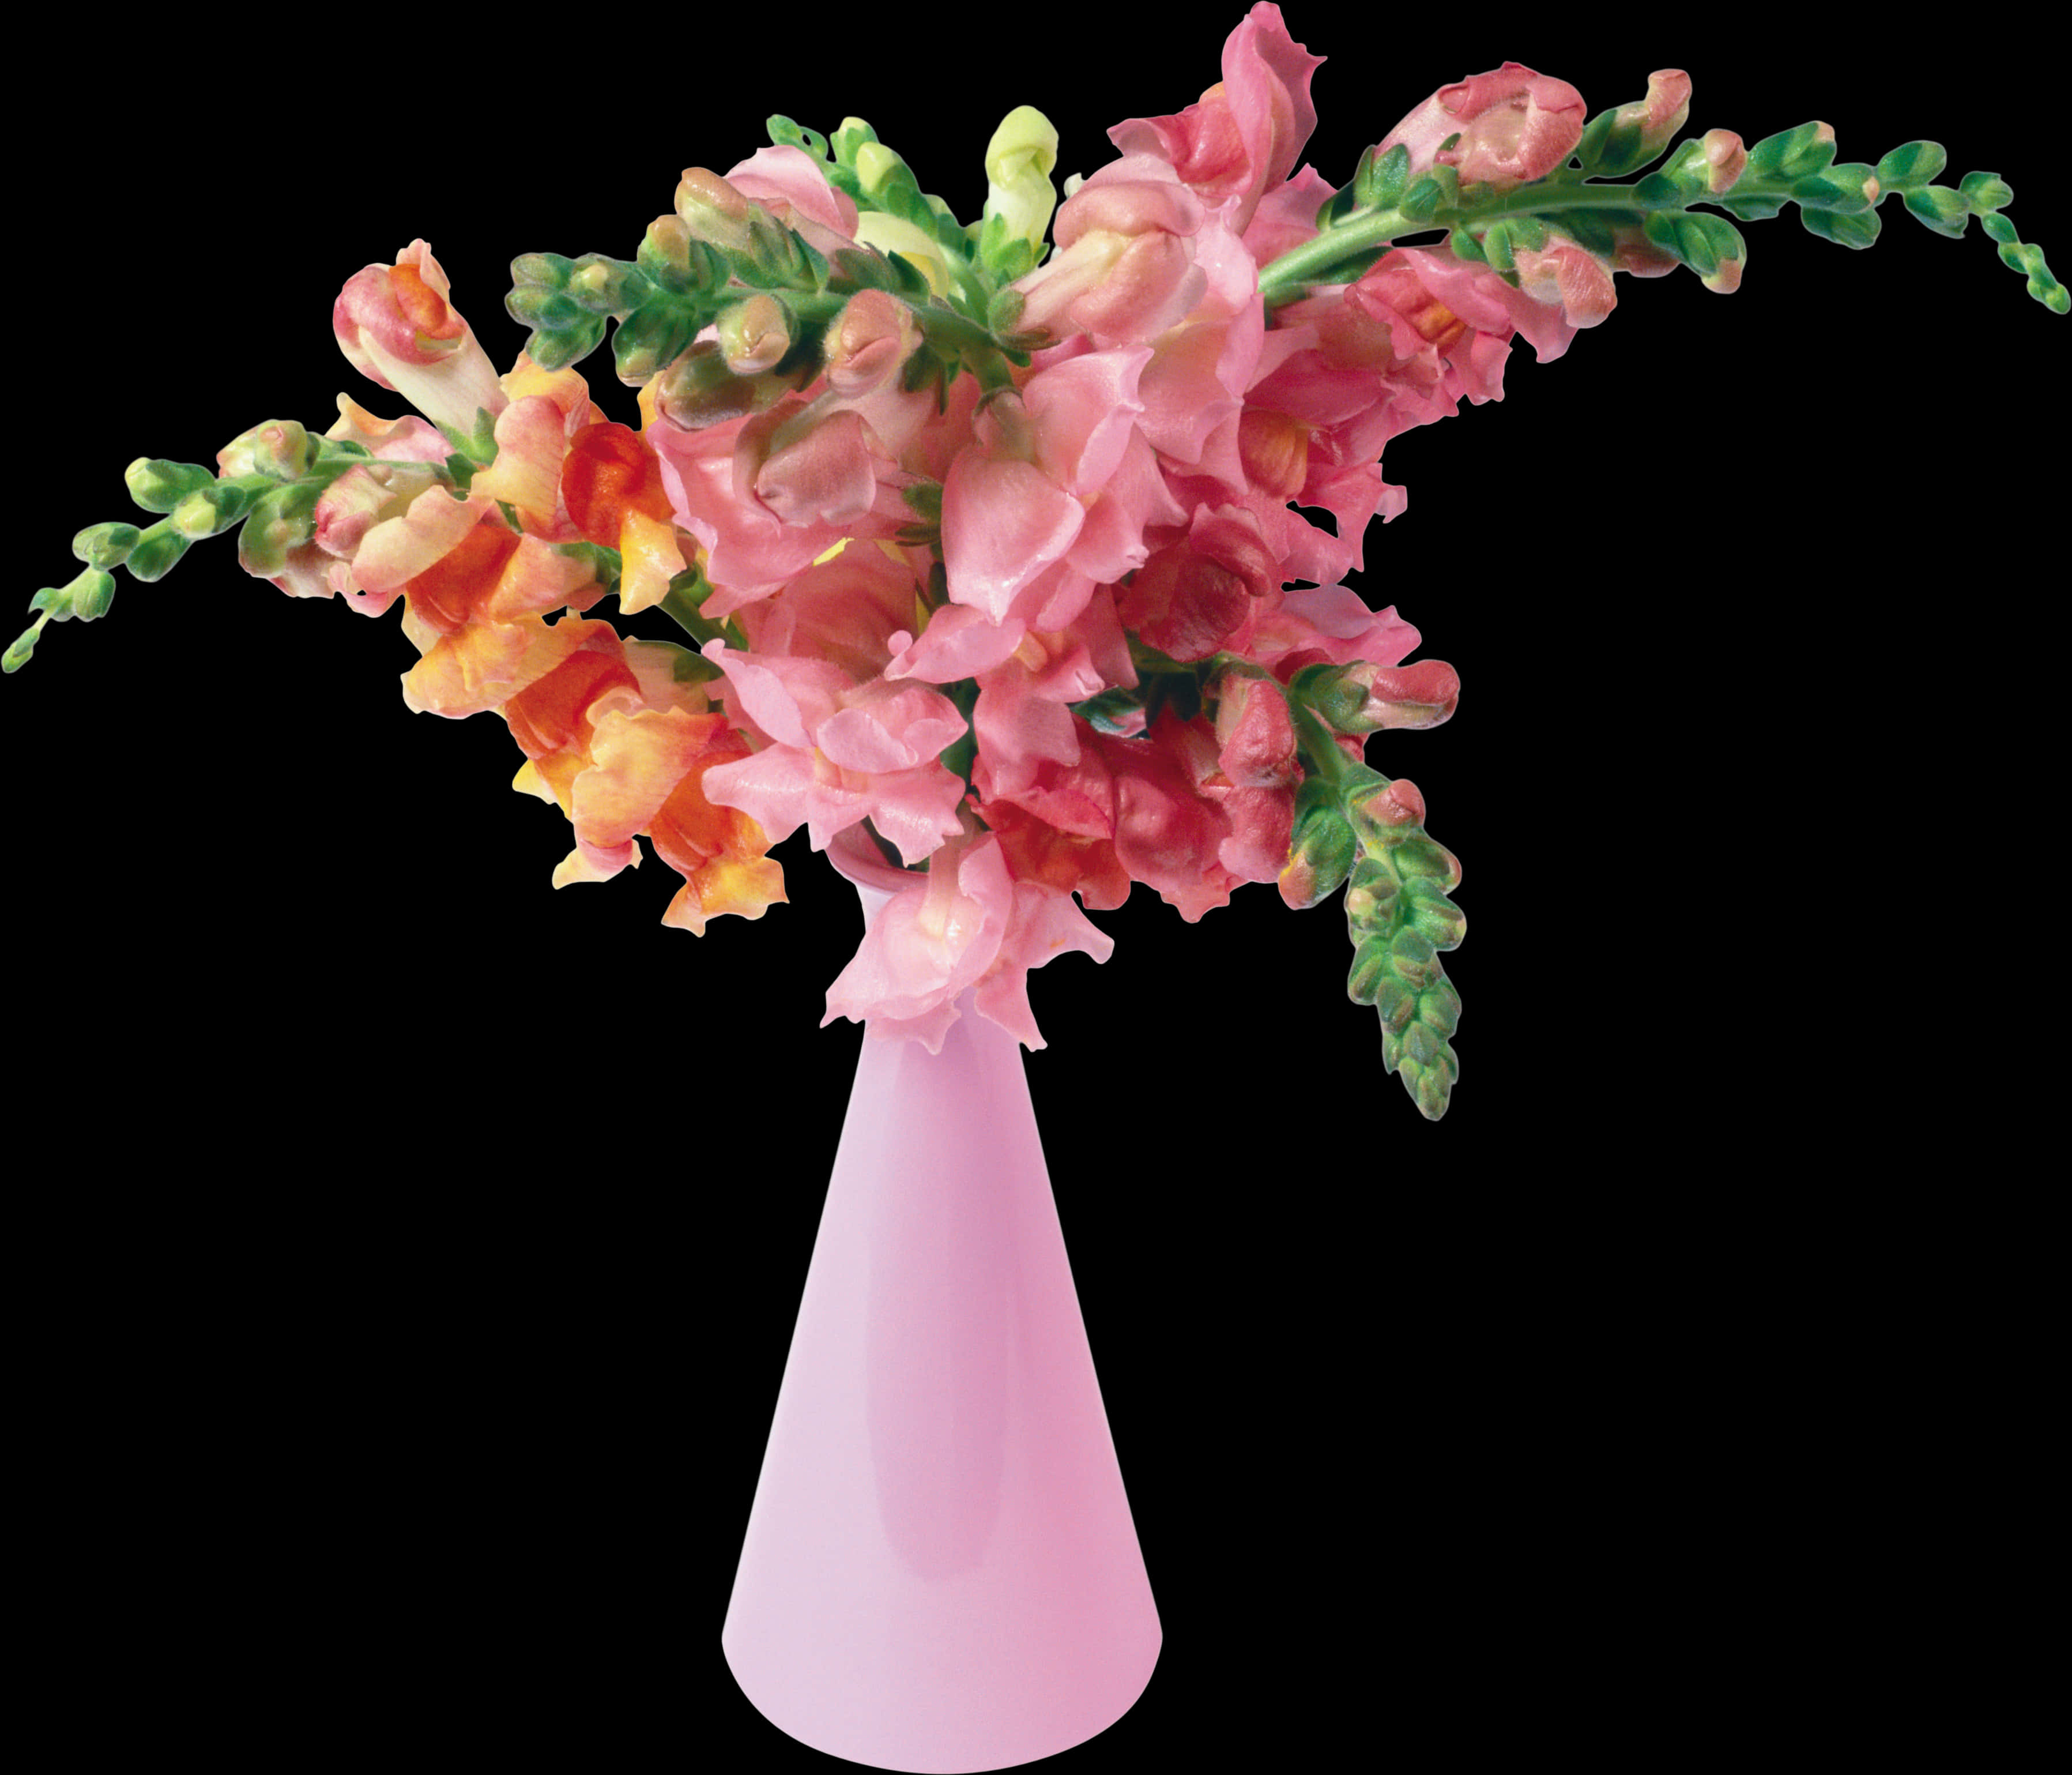 Pink Snapdragon Bouquetin Vase PNG image